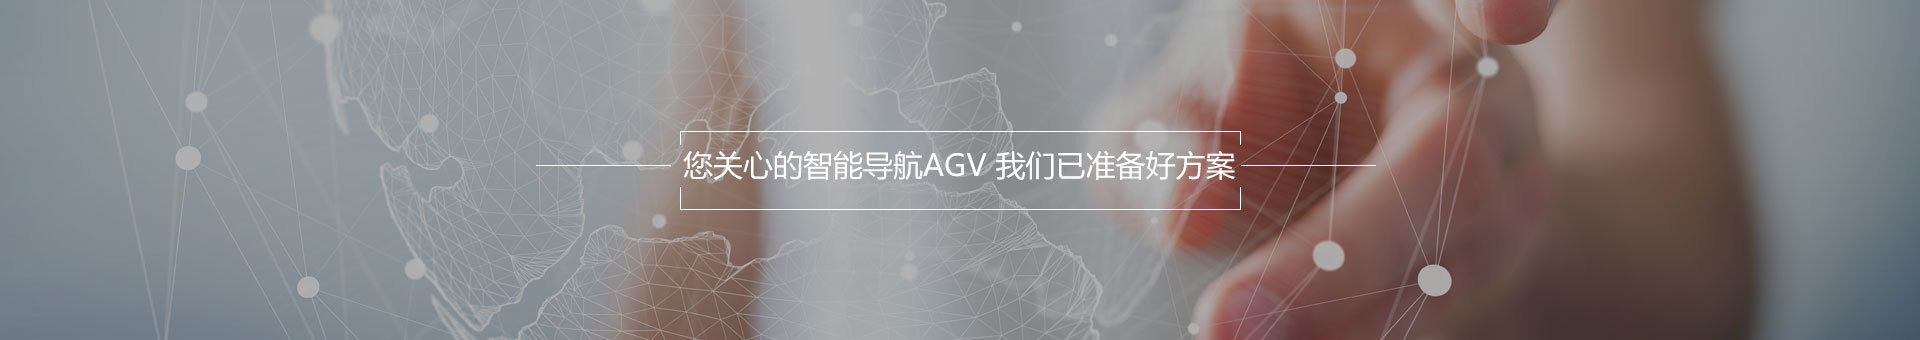 AGV服务机器人解决方案